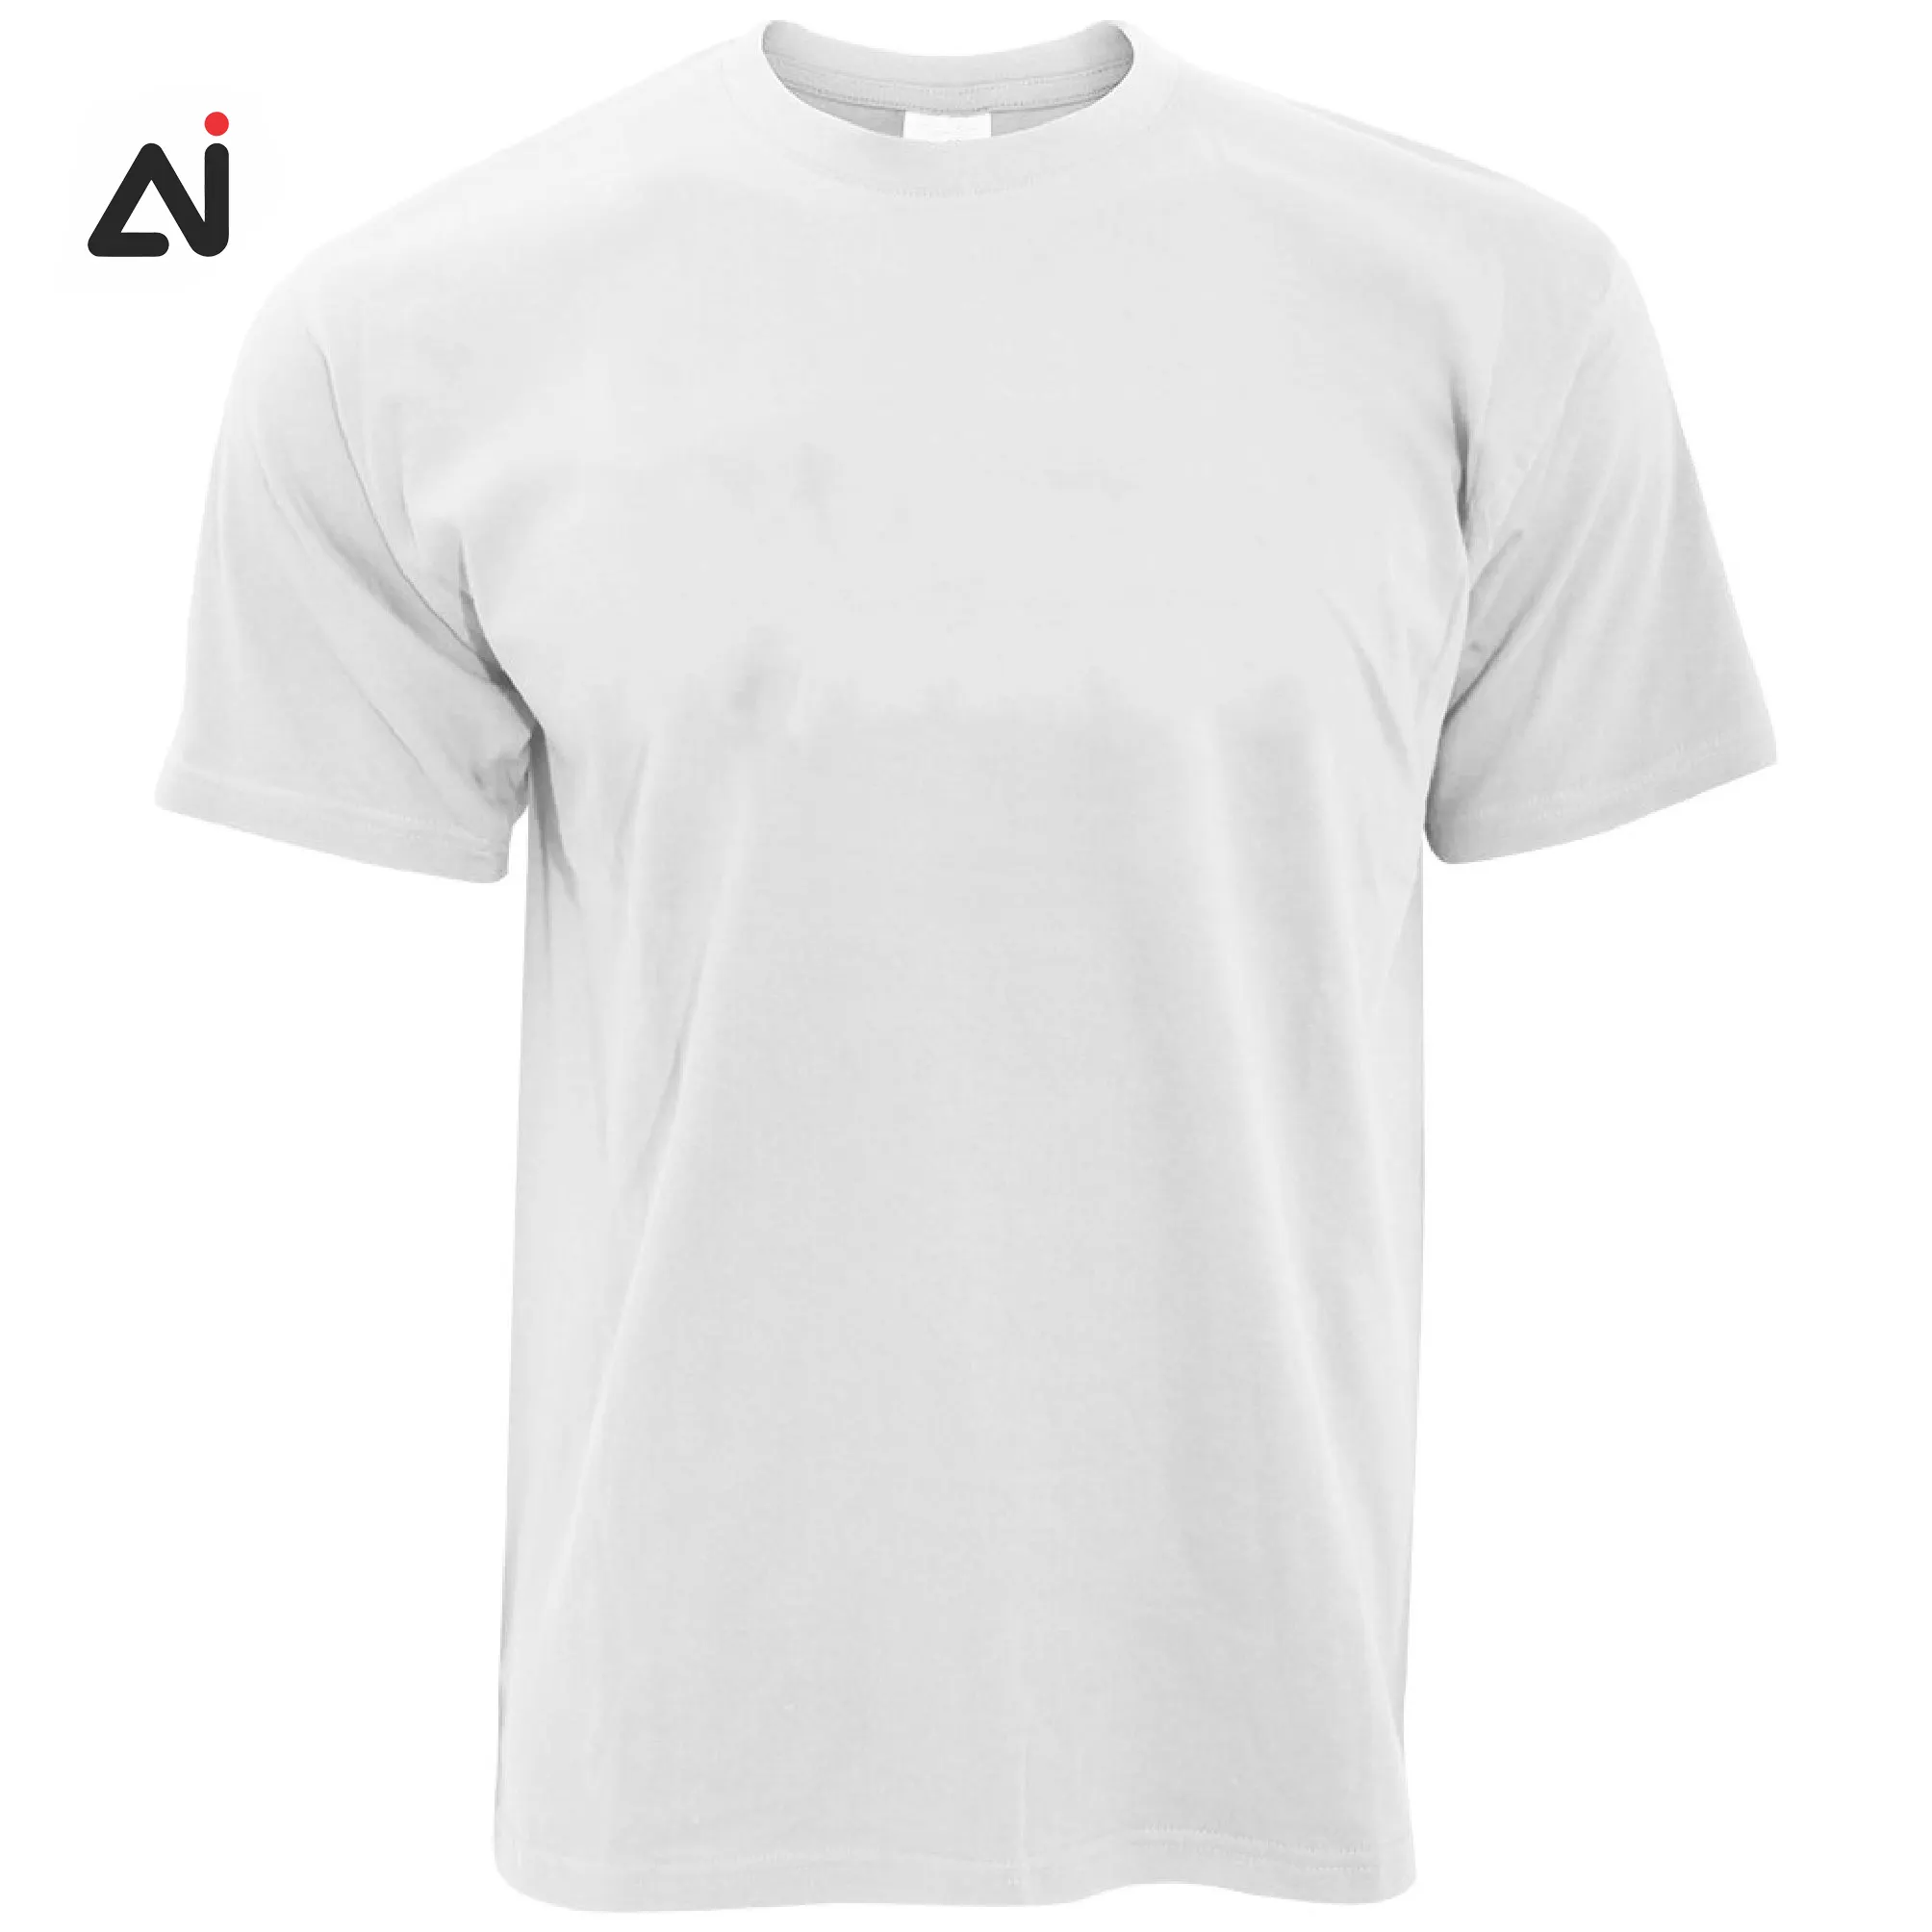 도매 제조 최신 디자인 새로운 T 셔츠 합리적인 가격